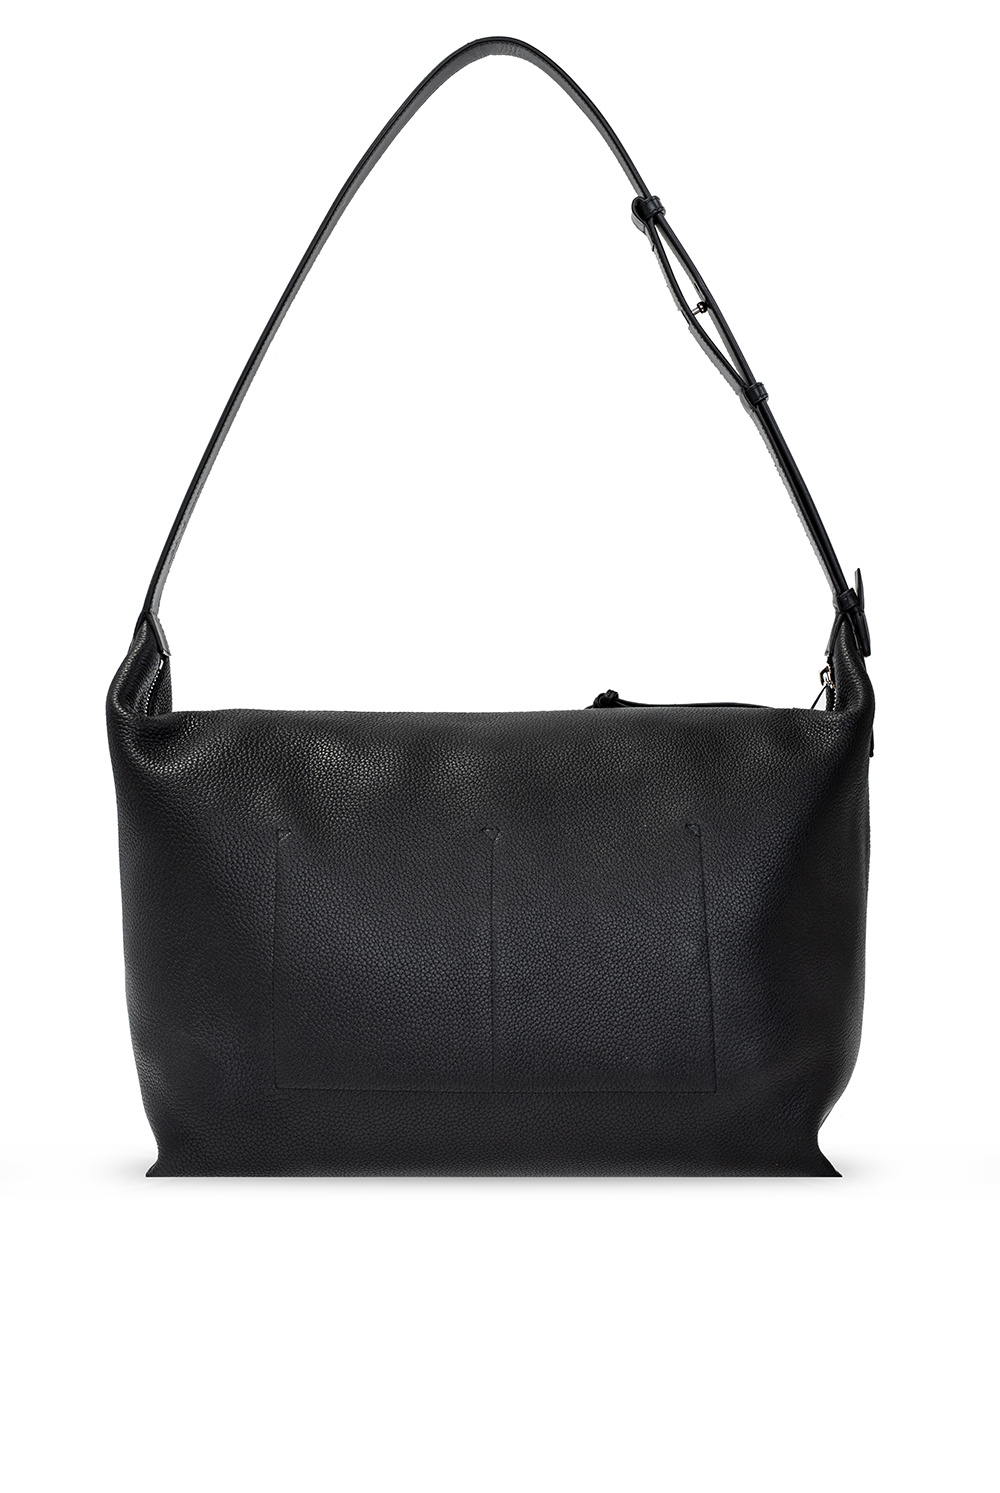 Loewe ‘Cubi Large’ shoulder bag